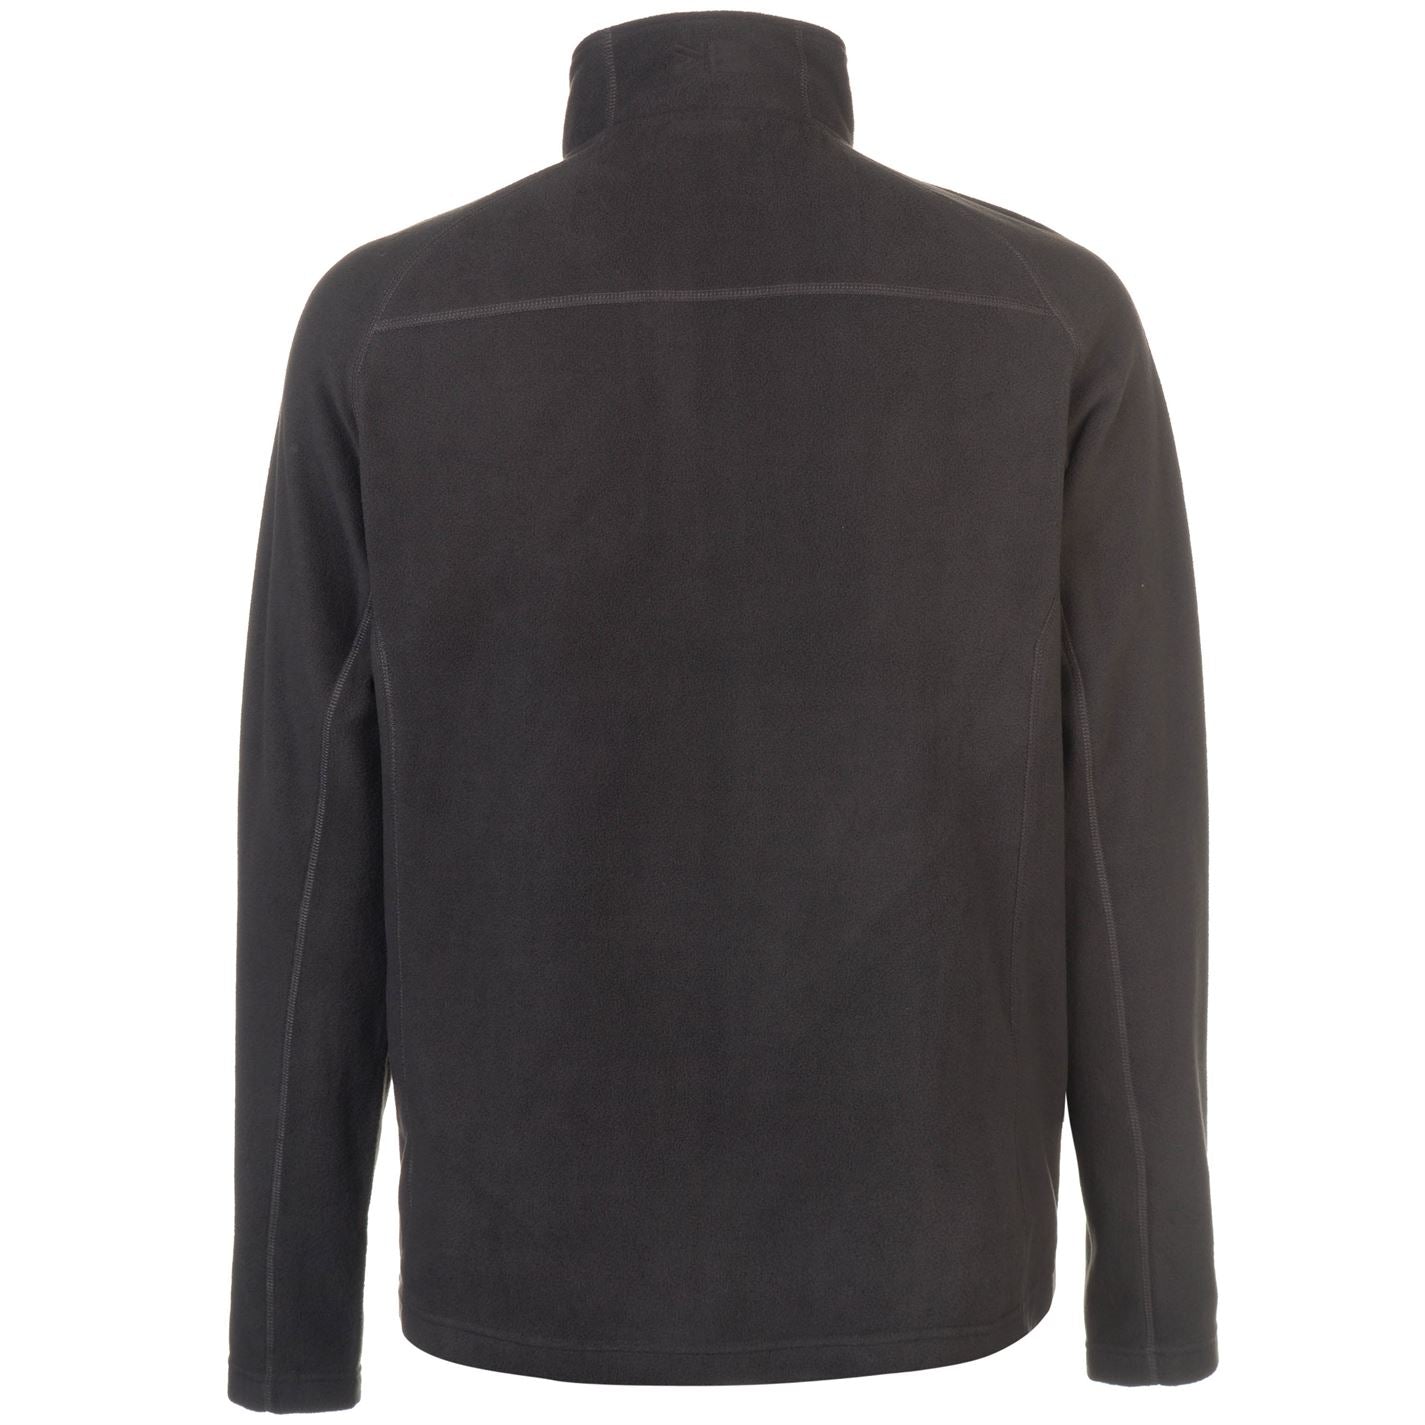 Karrimor Mens KS200 Micro Fleece Quarter Zip Top Sweatshirt Jumper Long Sleeve